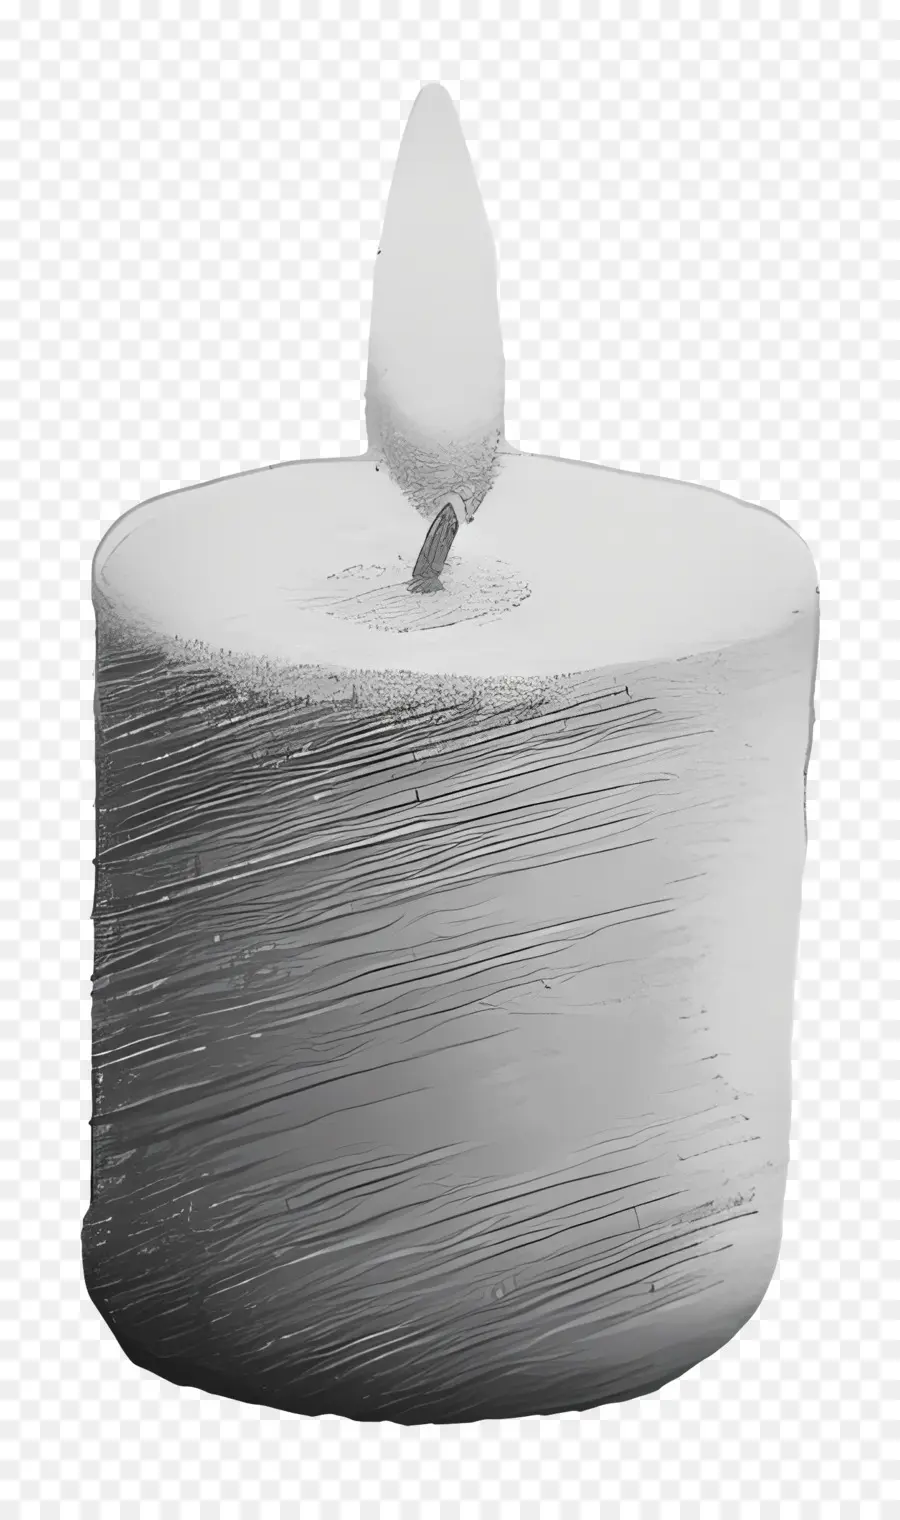 Kerzenlicht weiße Kerze schwarzer Hintergrund Flamme flackern - Weiße Kerze mit flackernder Flamme auf schwarzem Hintergrund